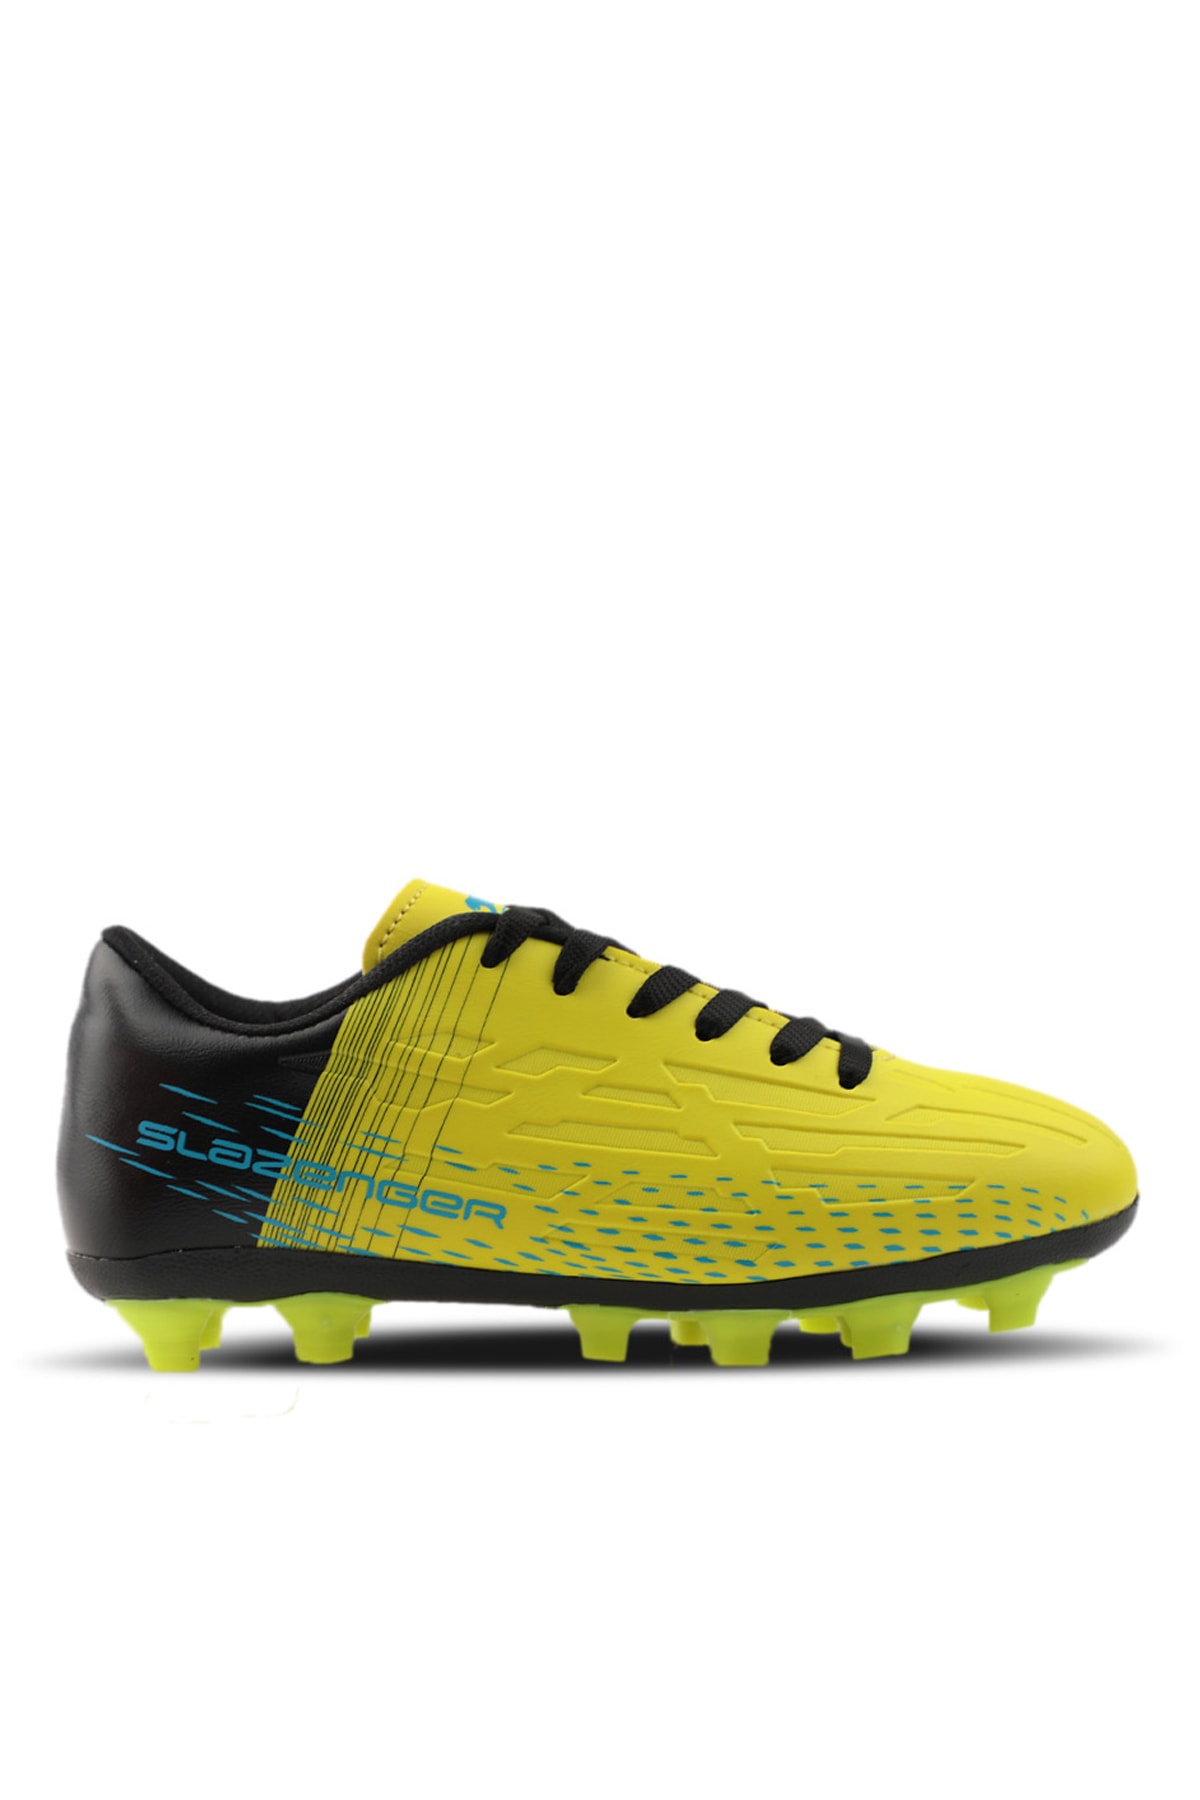 Slazenger Score Kr Football Mens Turf Shoes Neon Yellow / Black.